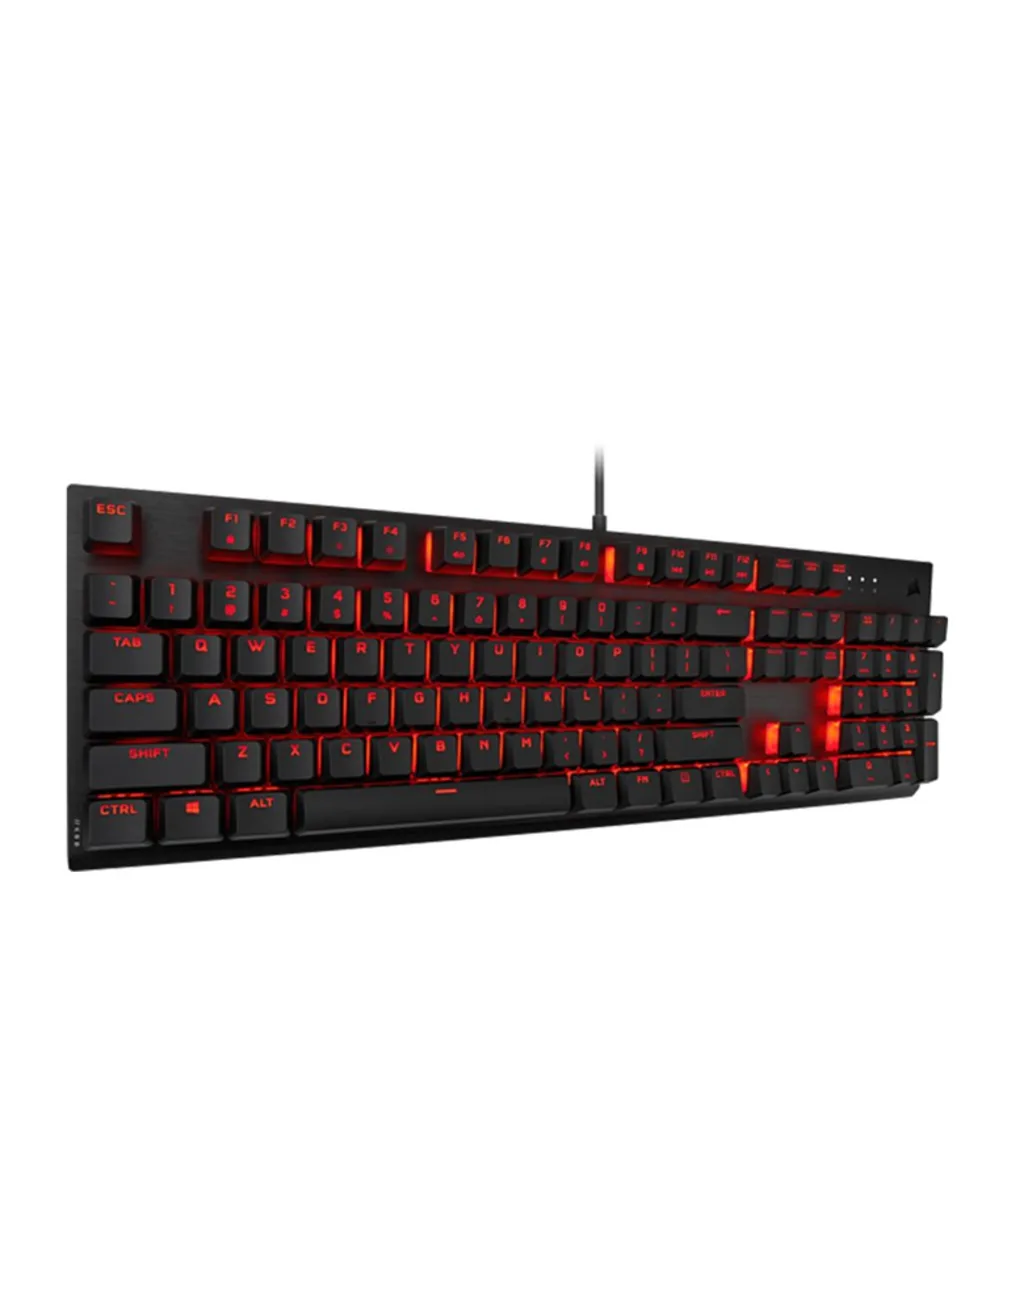 Corsair K60 Pro Red LED Gaming Keyboard